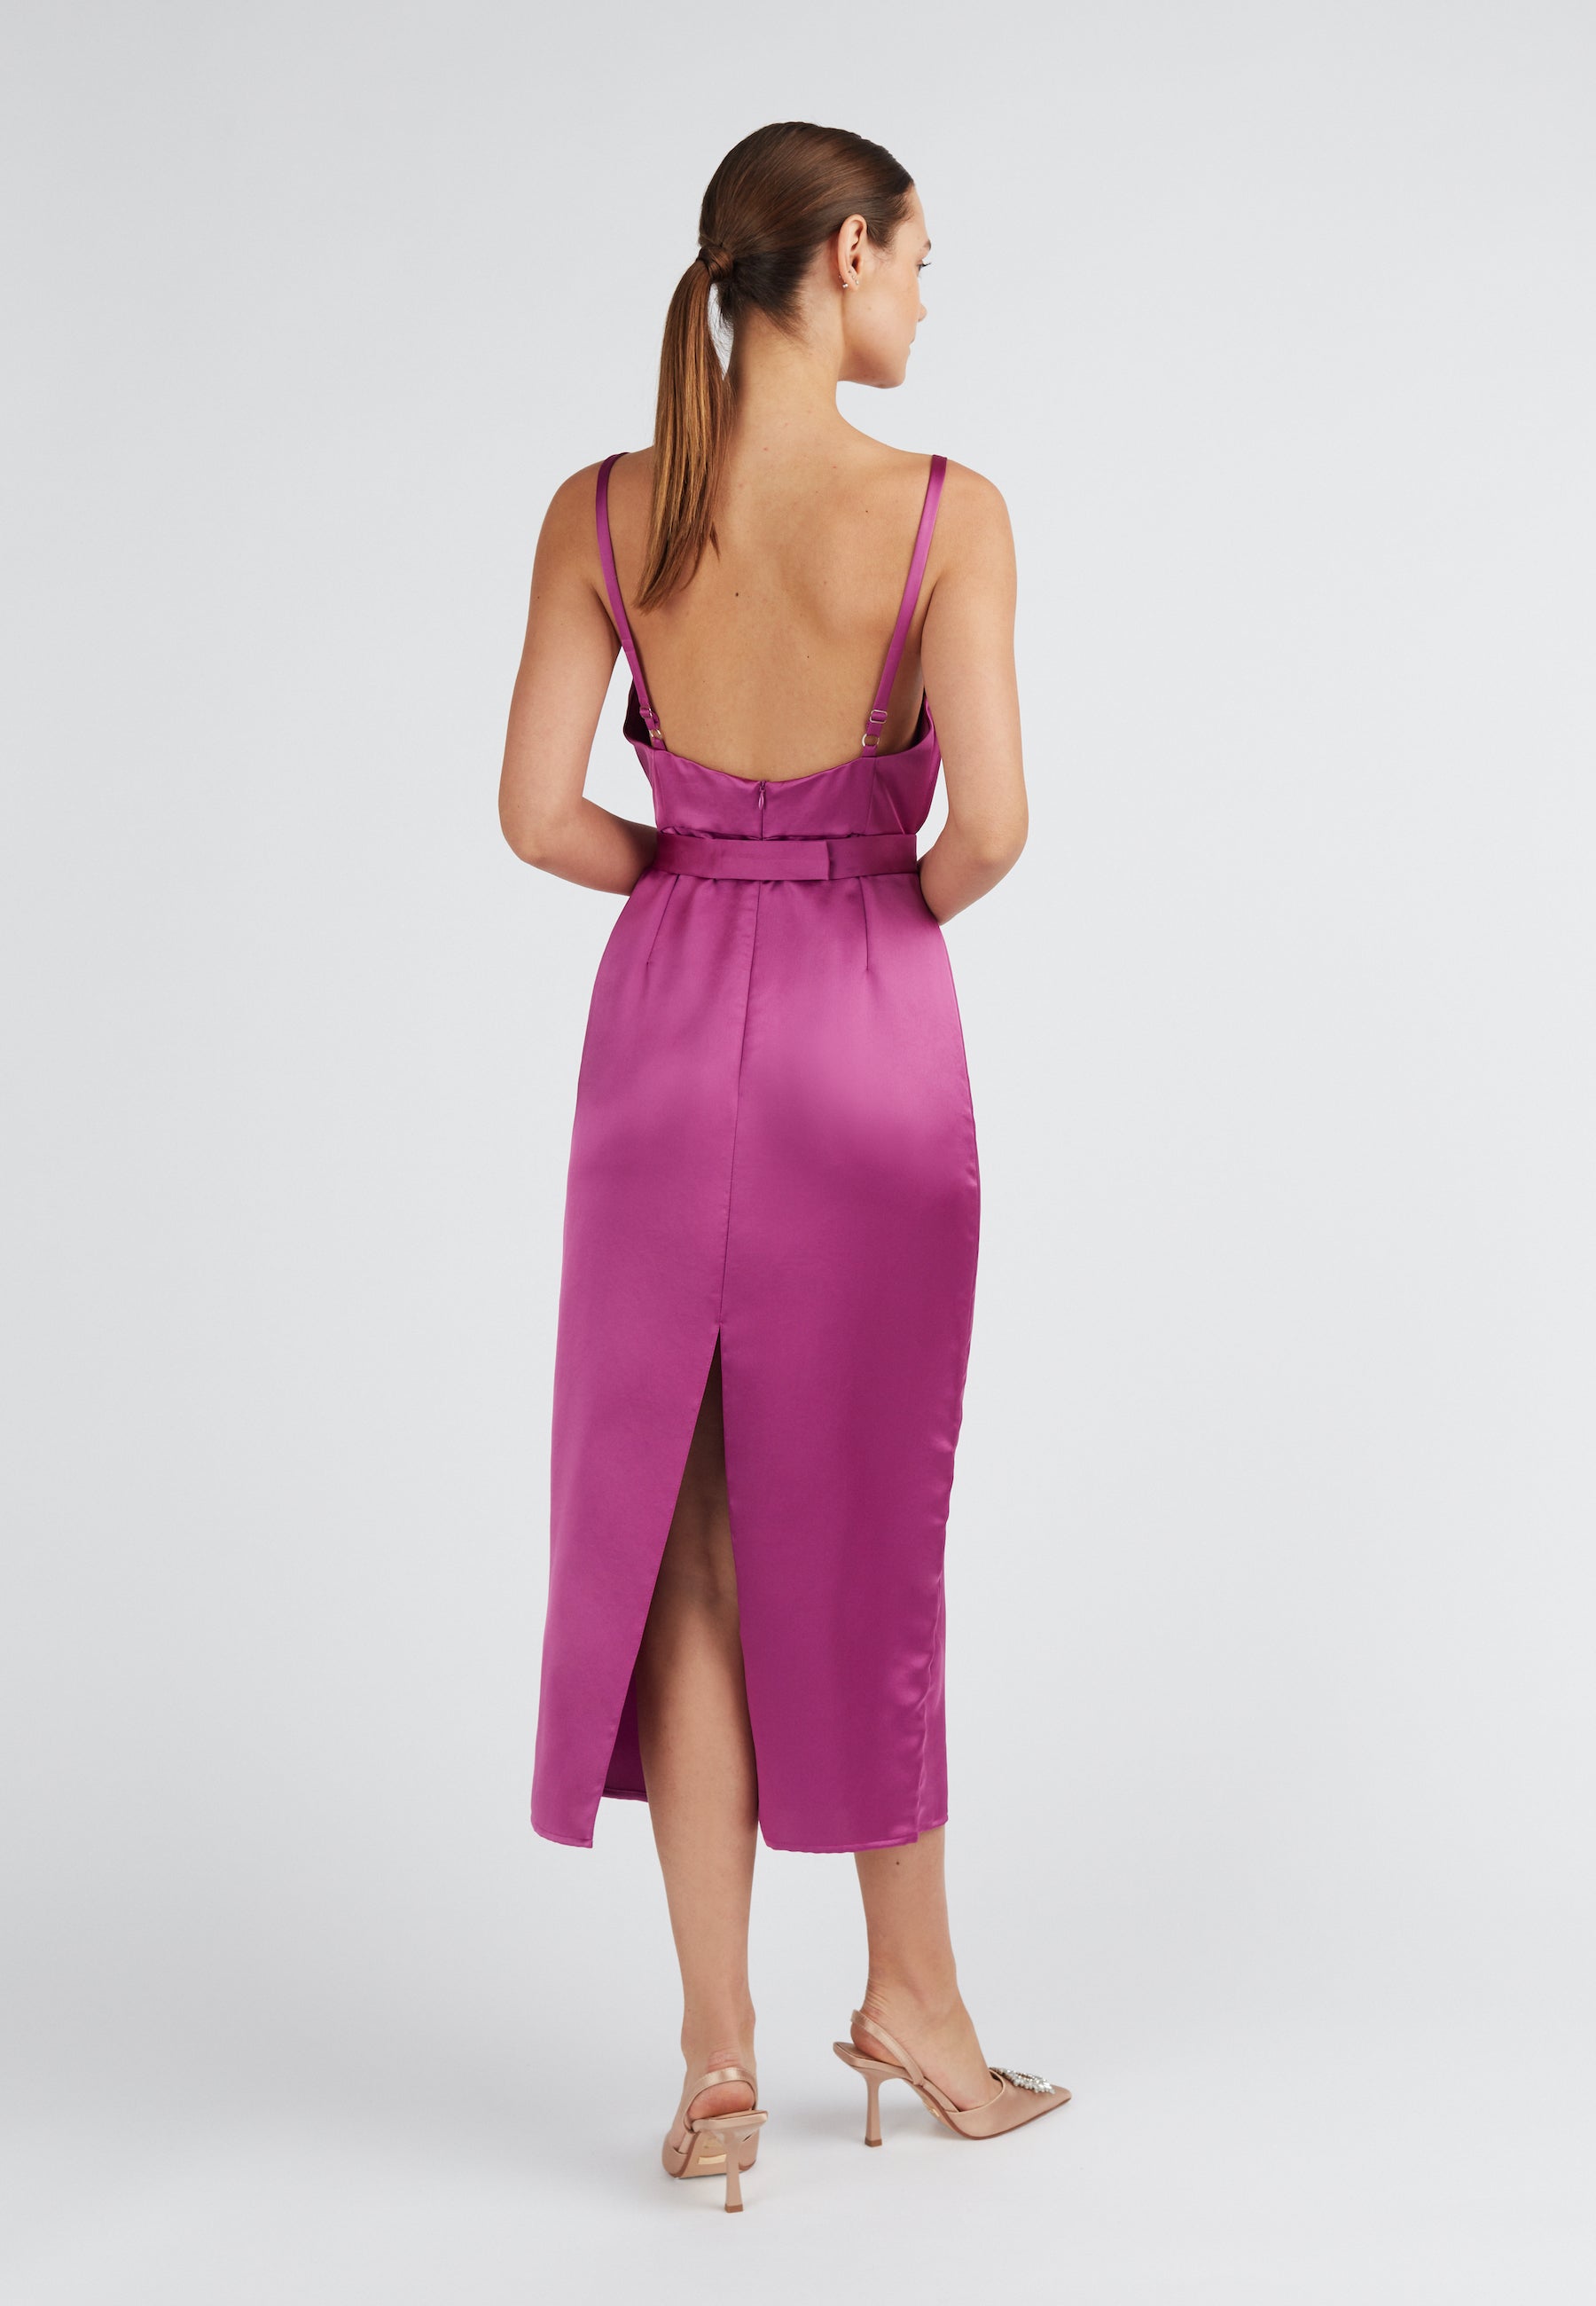 Magenta pink open back dress with back slit